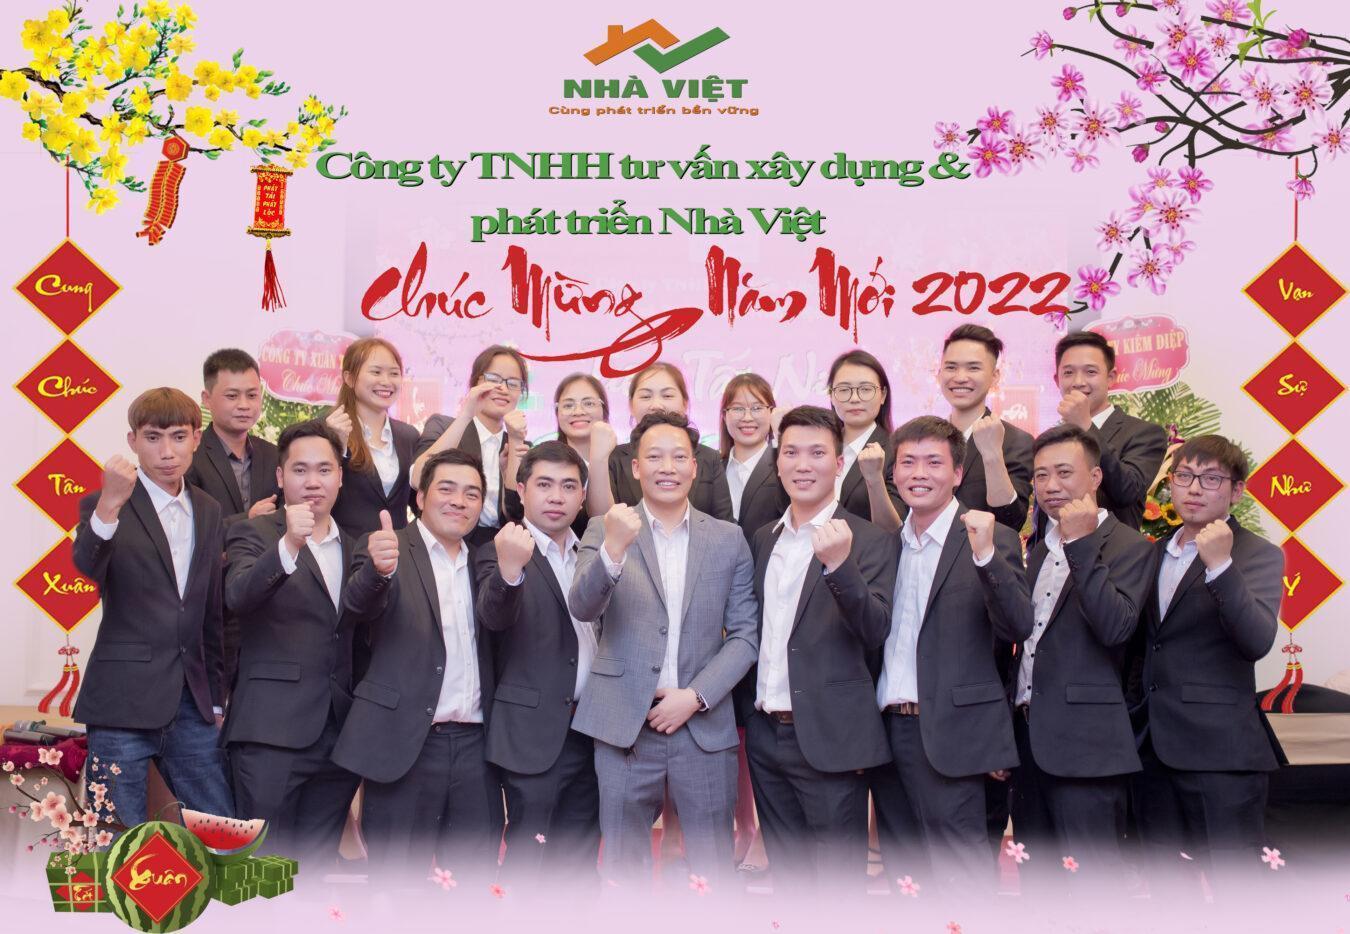 Nhà Việt chúc mừng năm mới 2022